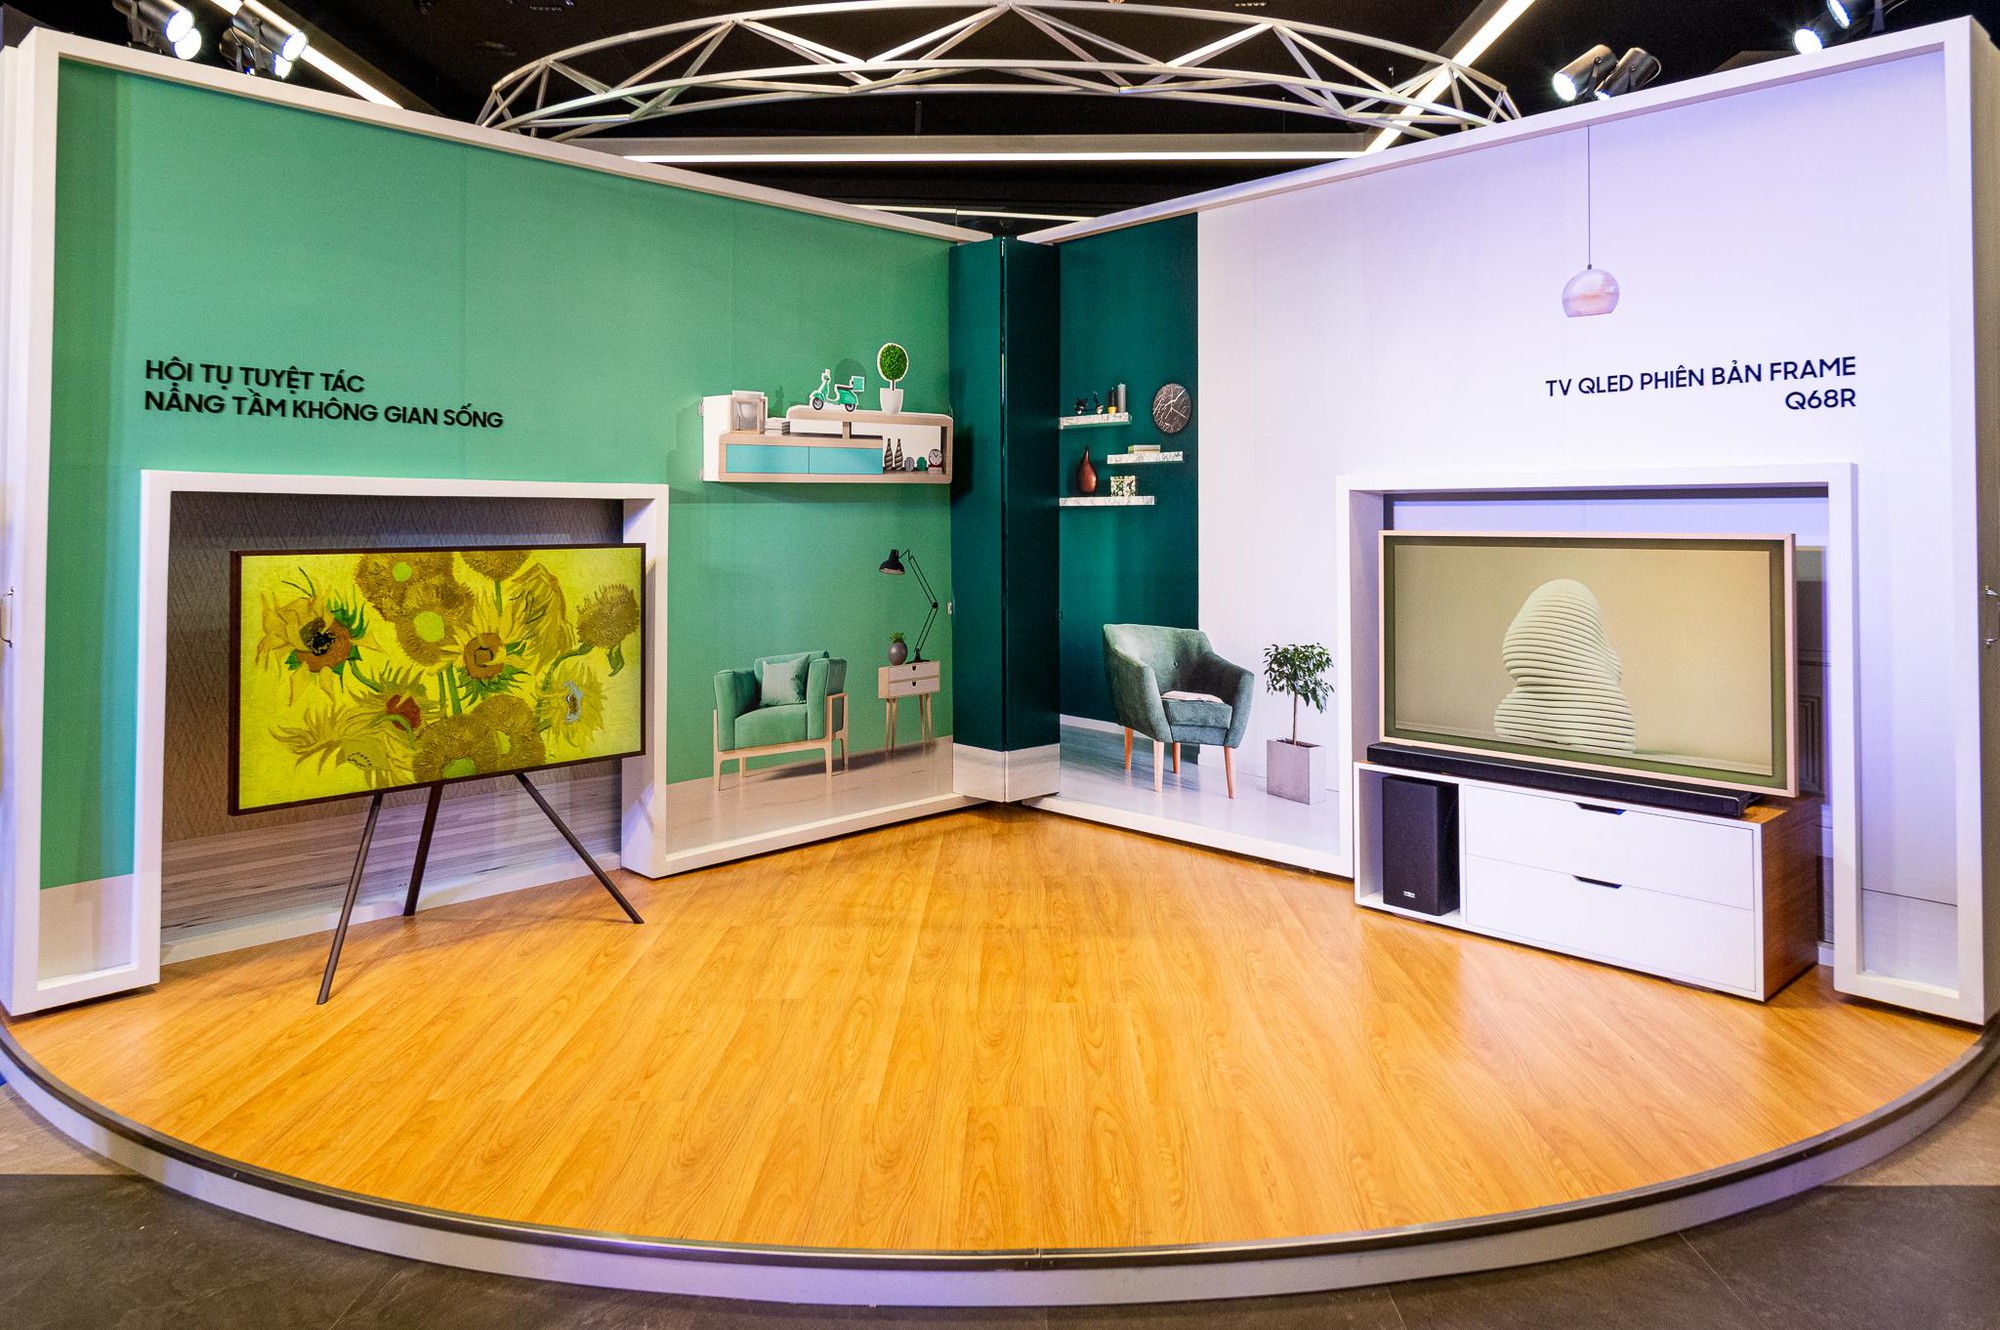 Biến TV thành khung tranh độc đáo, Triển lãm bộ sưu tập Van Gogh tại Samsung Showcase thu hút người tham dự - Ảnh 6.